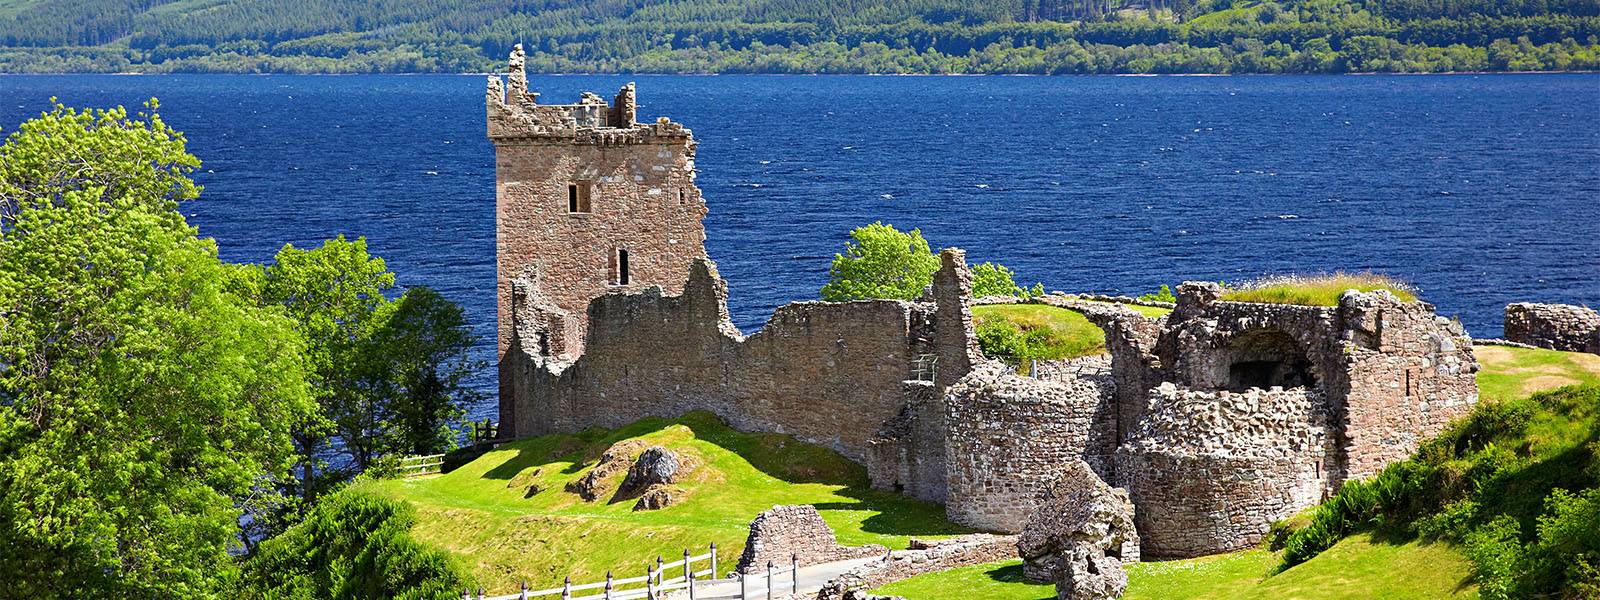 Urquhart Castle near Loch Ness